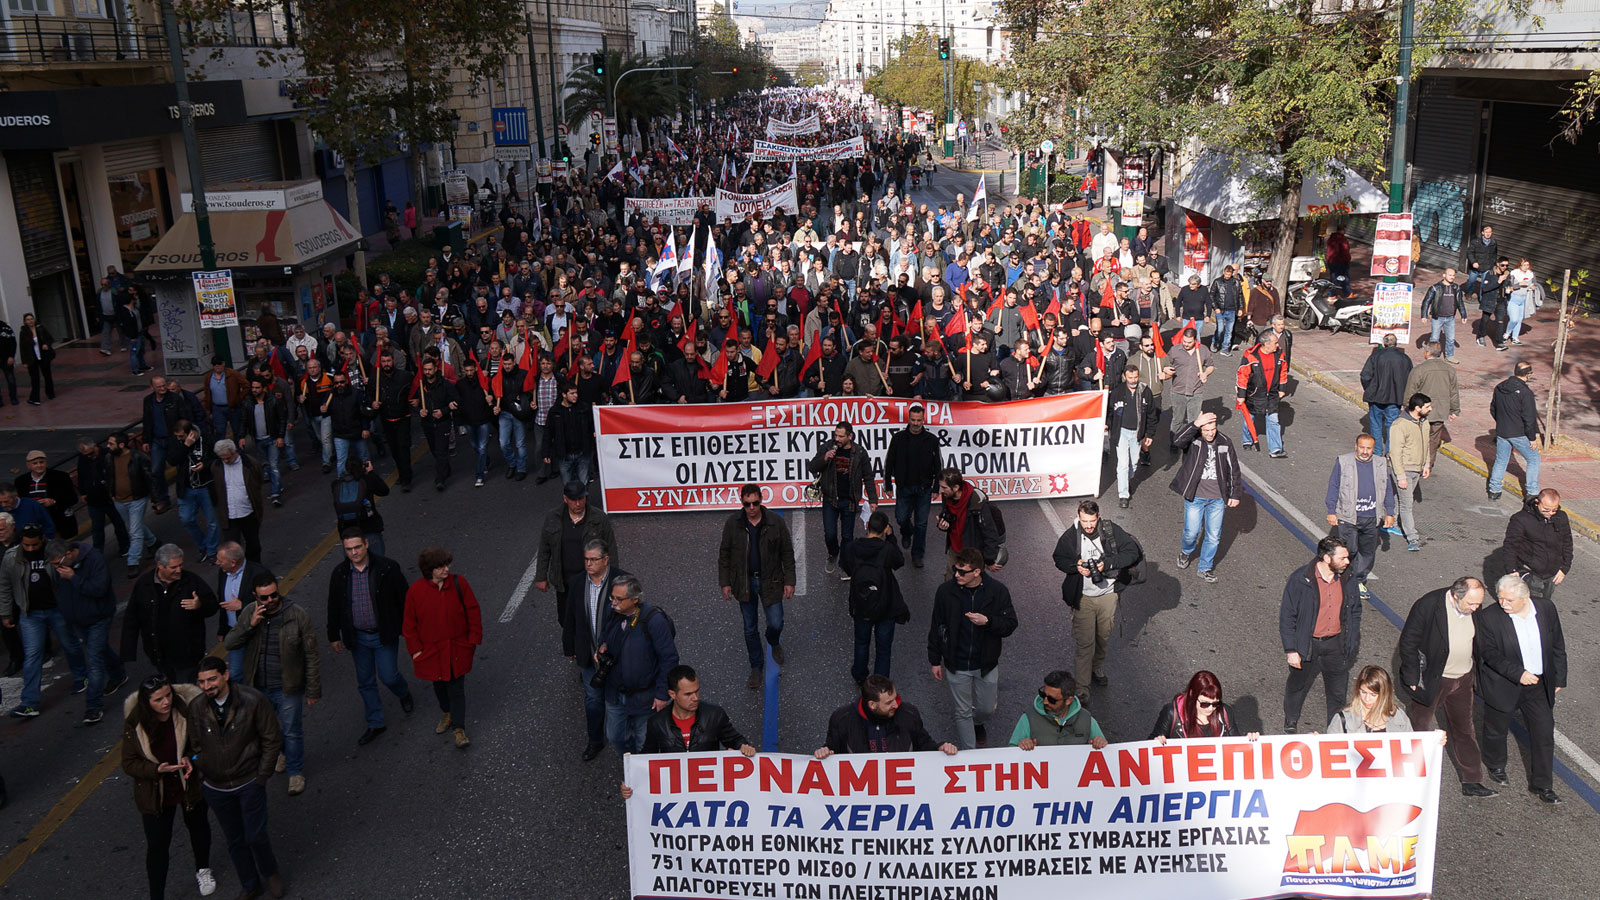 Yunanistan'da genel grev: Binlerce emekçi iş bıraktı